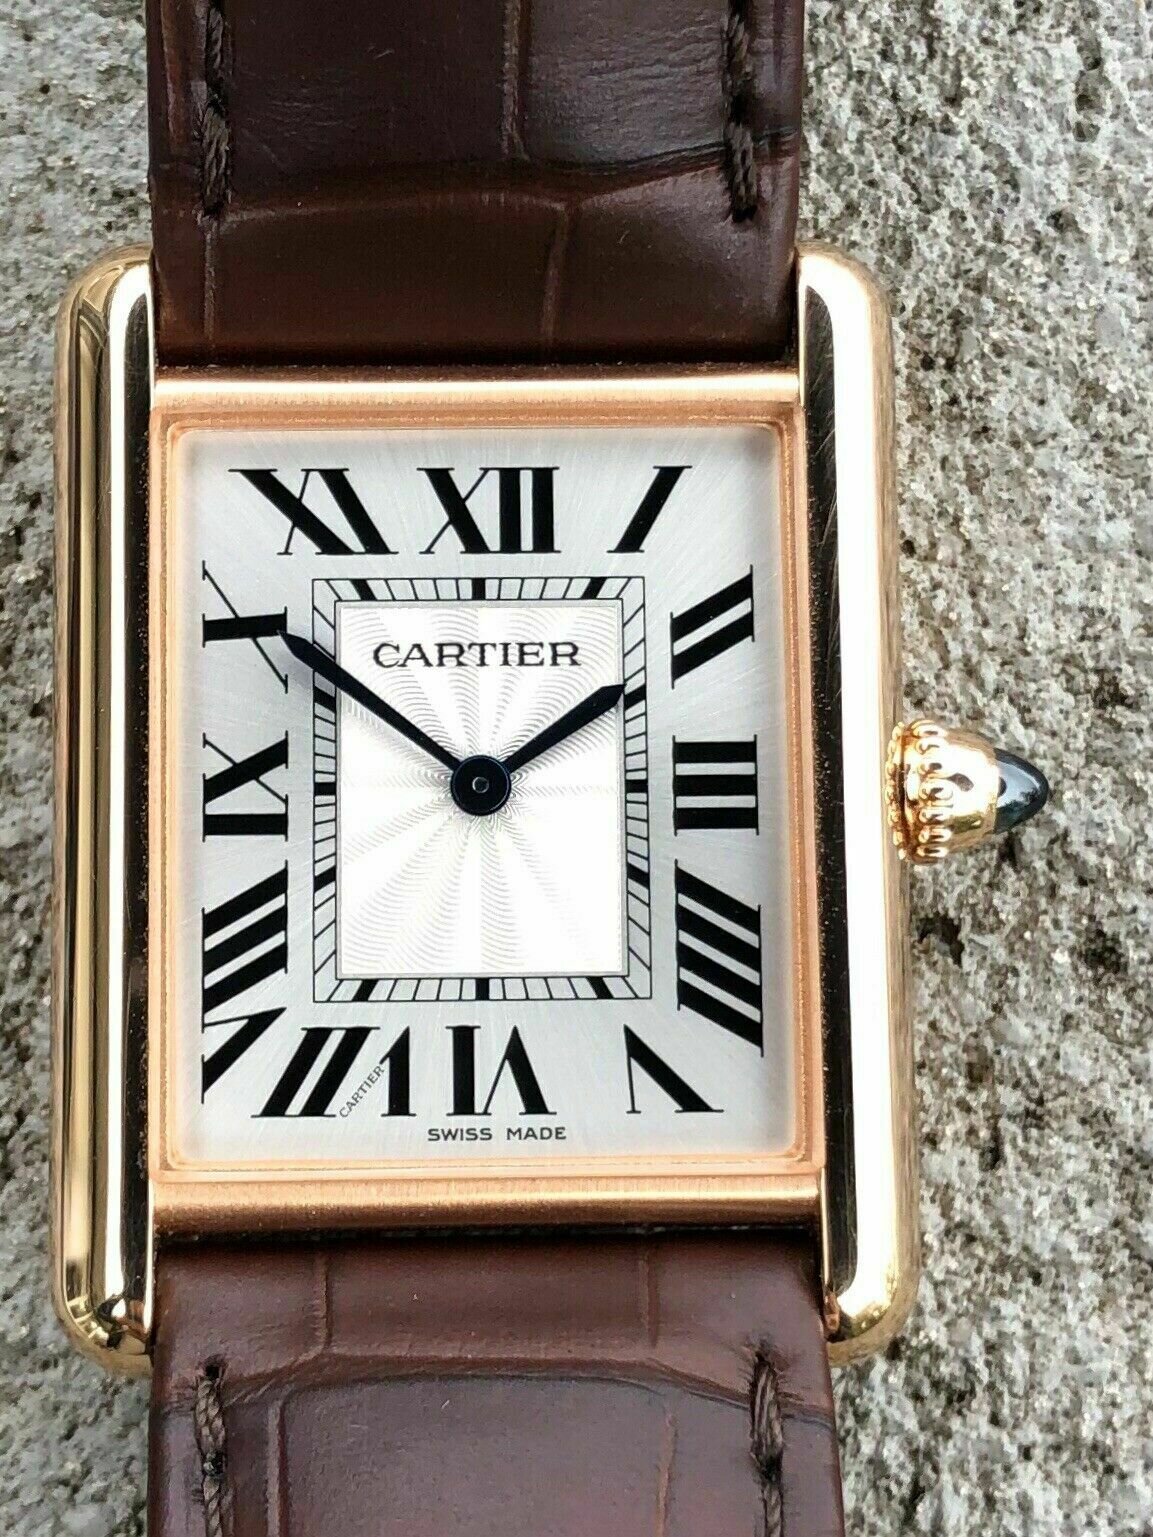 Cartier Tank Louis Cartier WGTA0011 Rose Gold Watch